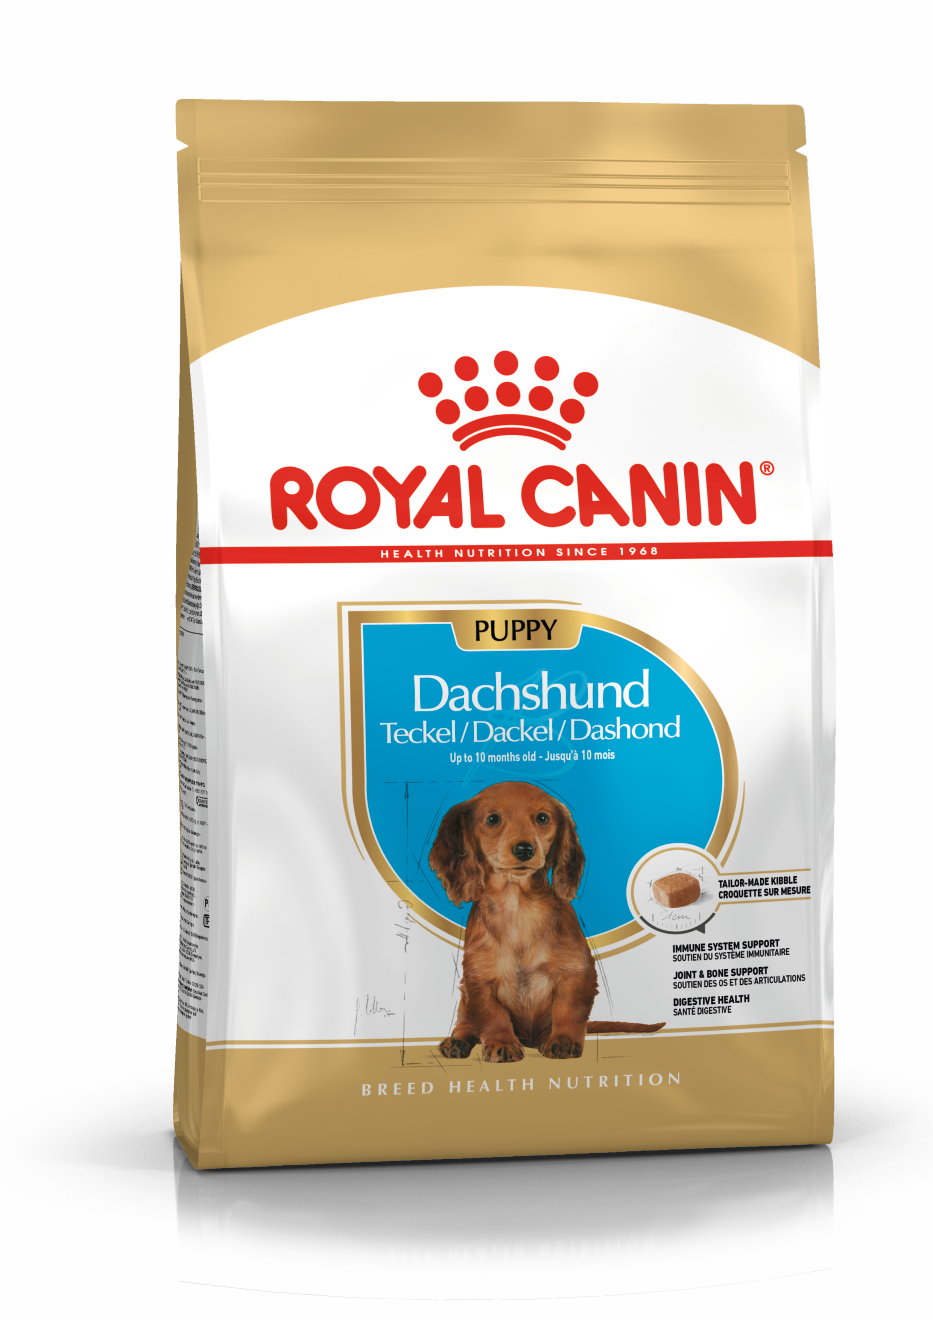 ROYAL CANIN Dachshund Puppy Dog Food